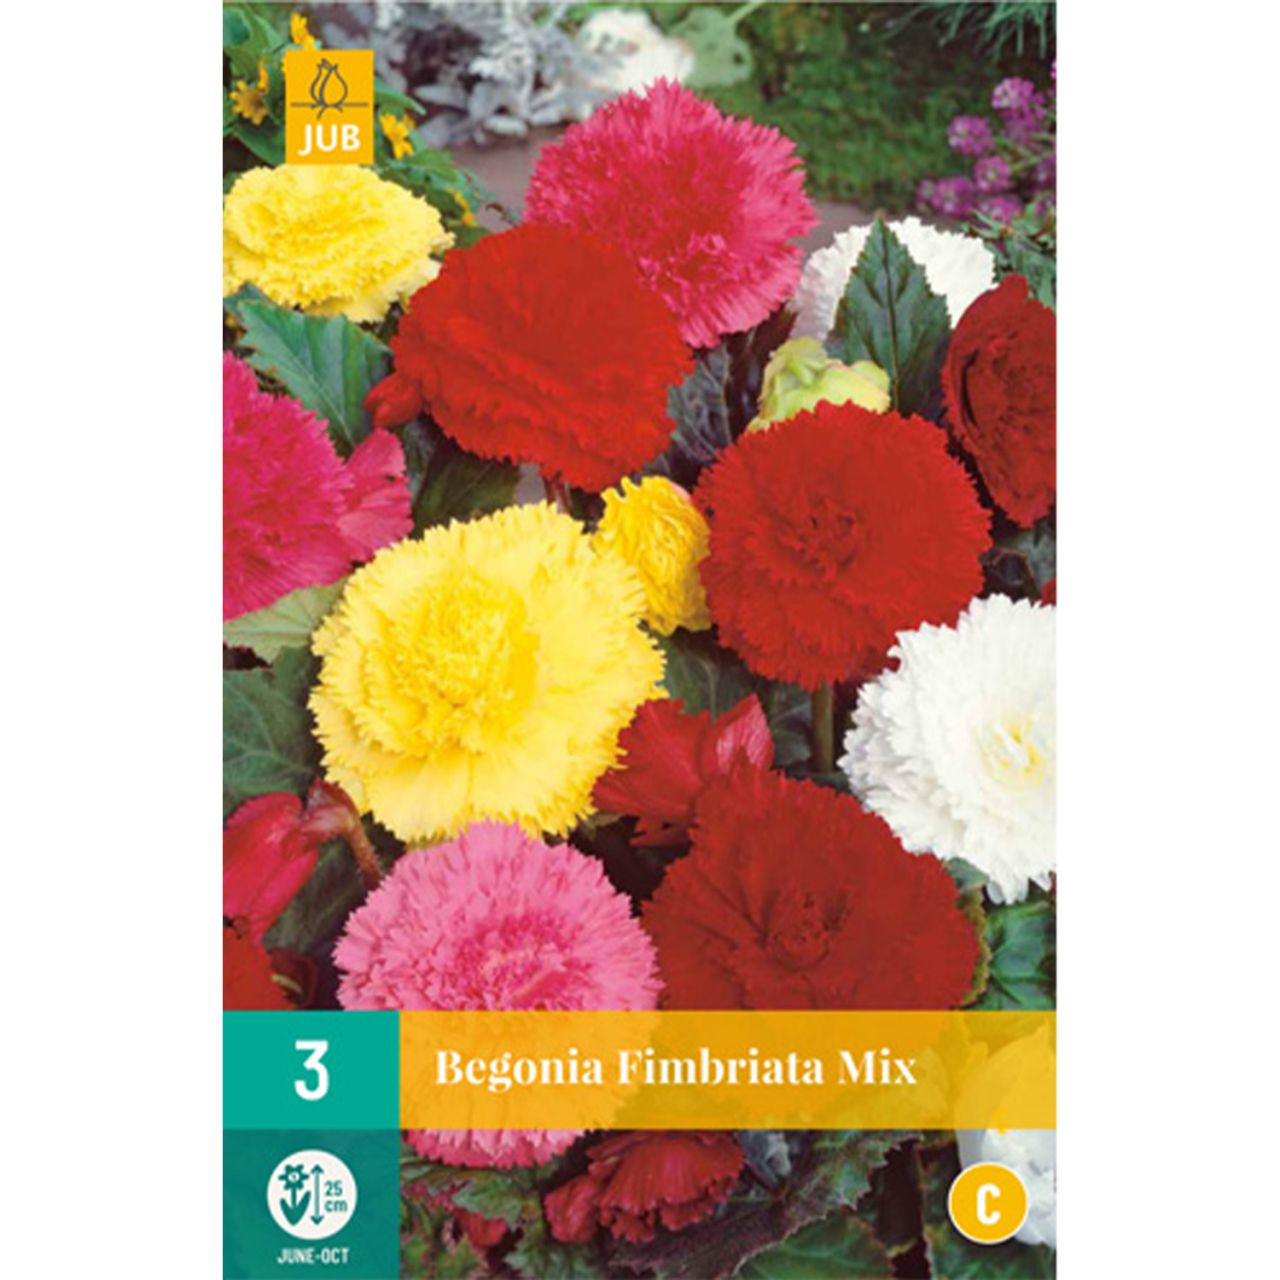 Kategorie <b>Frühlings-Blumenzwiebeln </b> - Gefranste-Begonie 'Fimbriata Mischung' - 3 Stück - Begonia Fimbriata